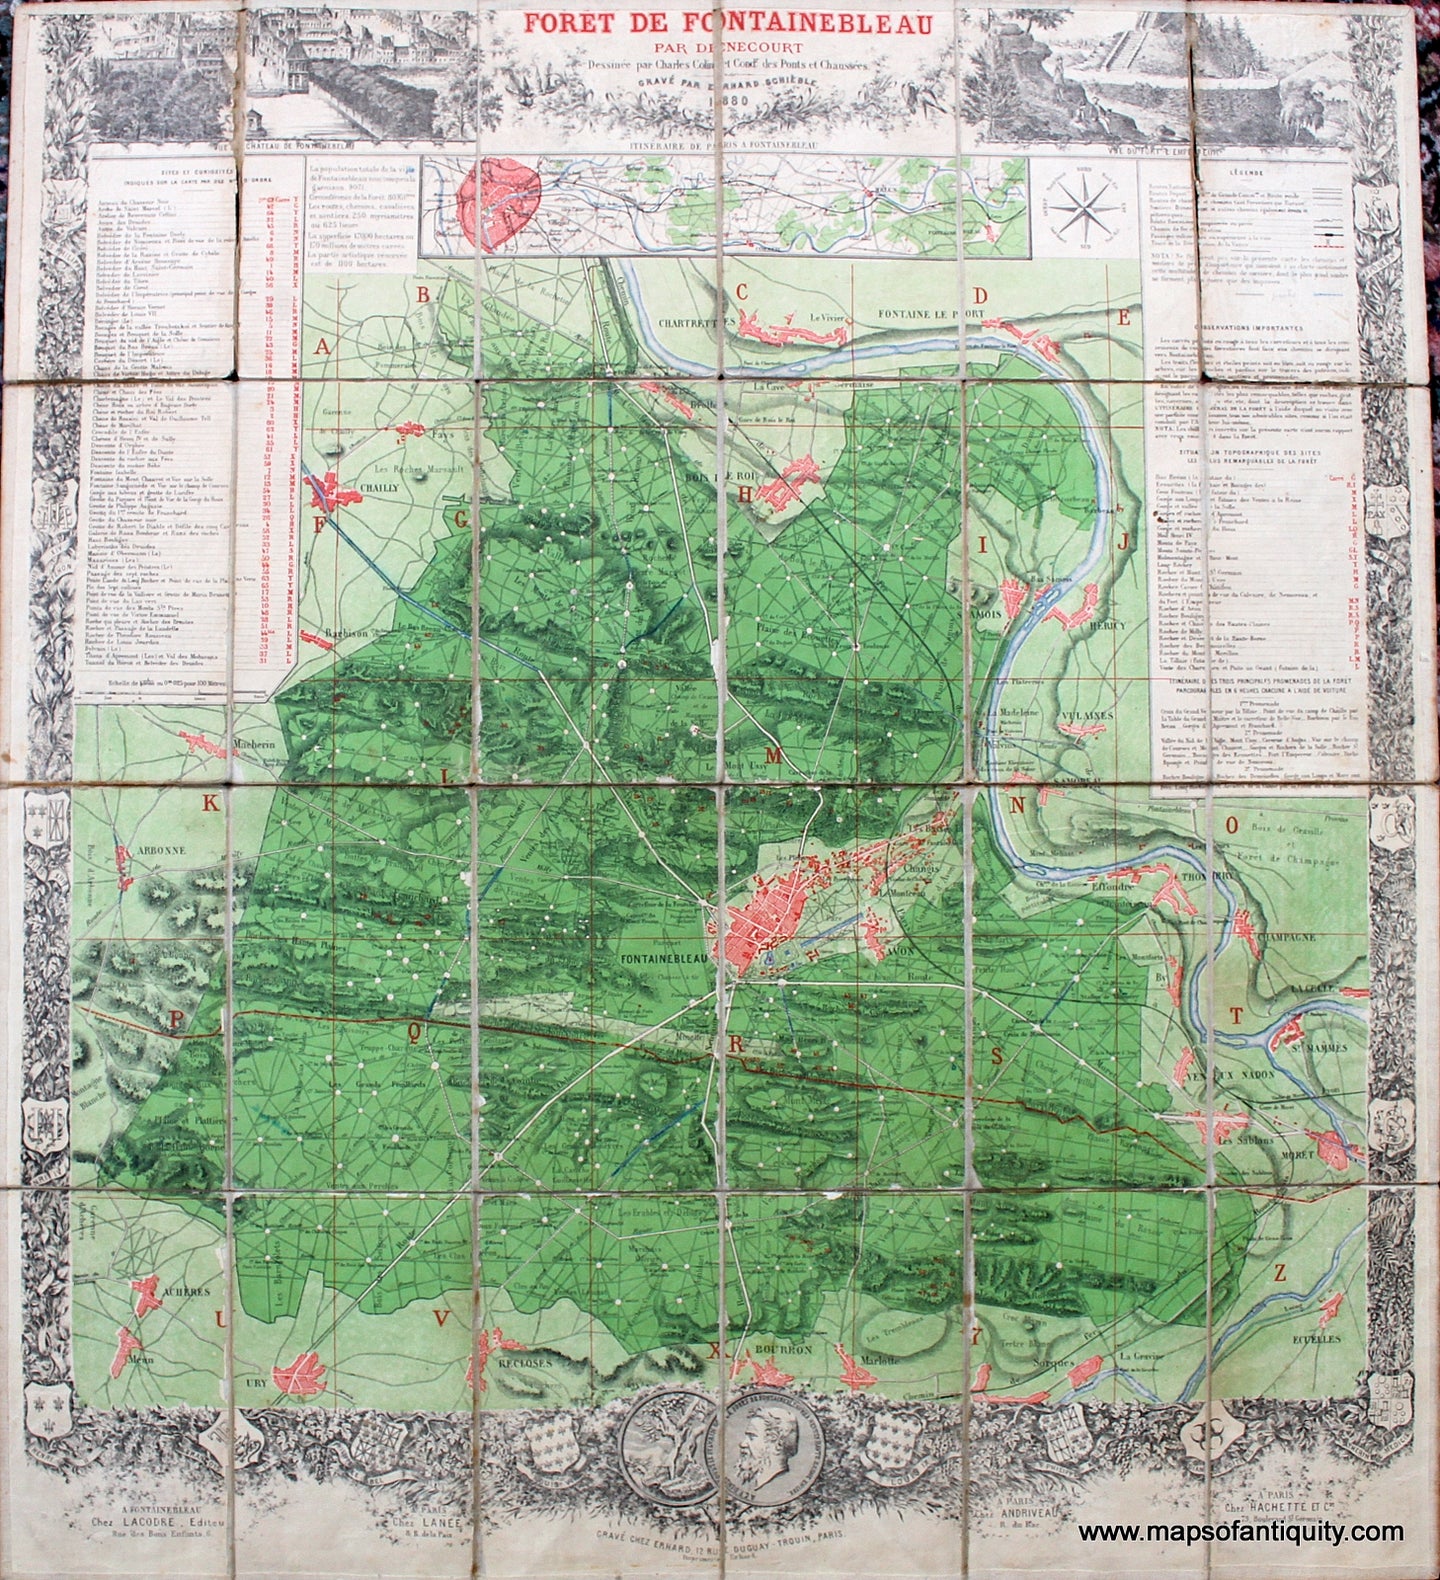 Antique-Hand-Colored--Folding-Map-Souvenir-de-Fontainebleau-France-Foret-de-Fontainebleau-France-Folding-Maps-1880-Lacodre-Maps-Of-Antiquity